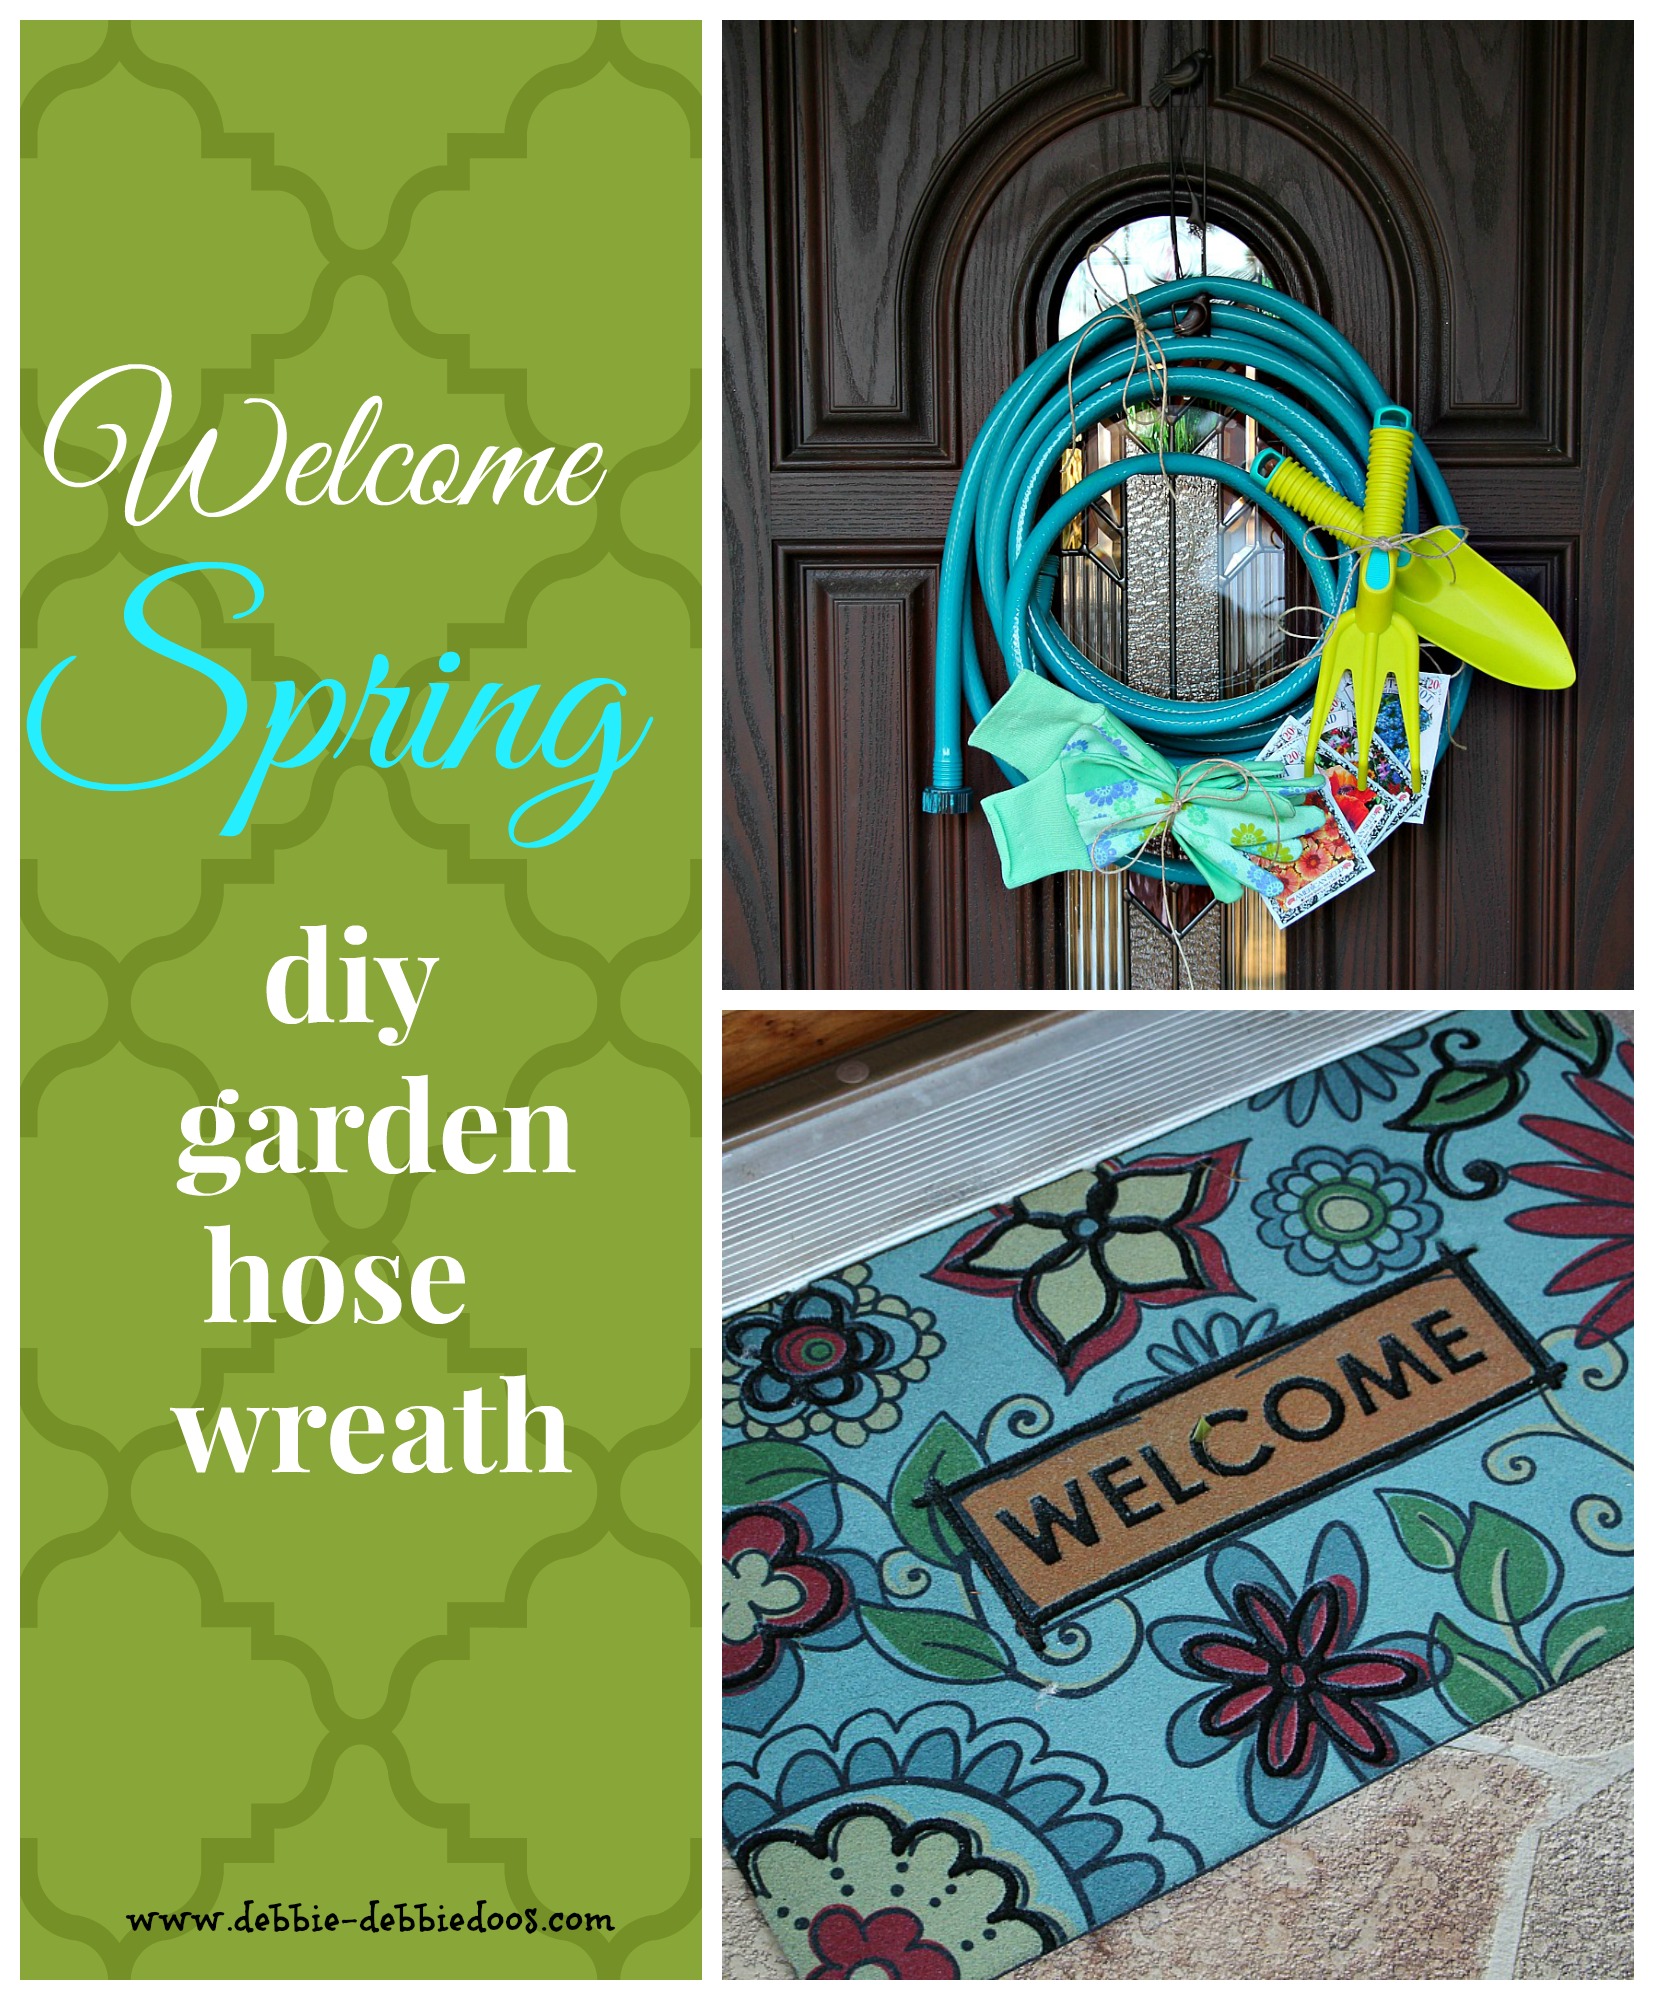 Spring welcome garden hose wreath